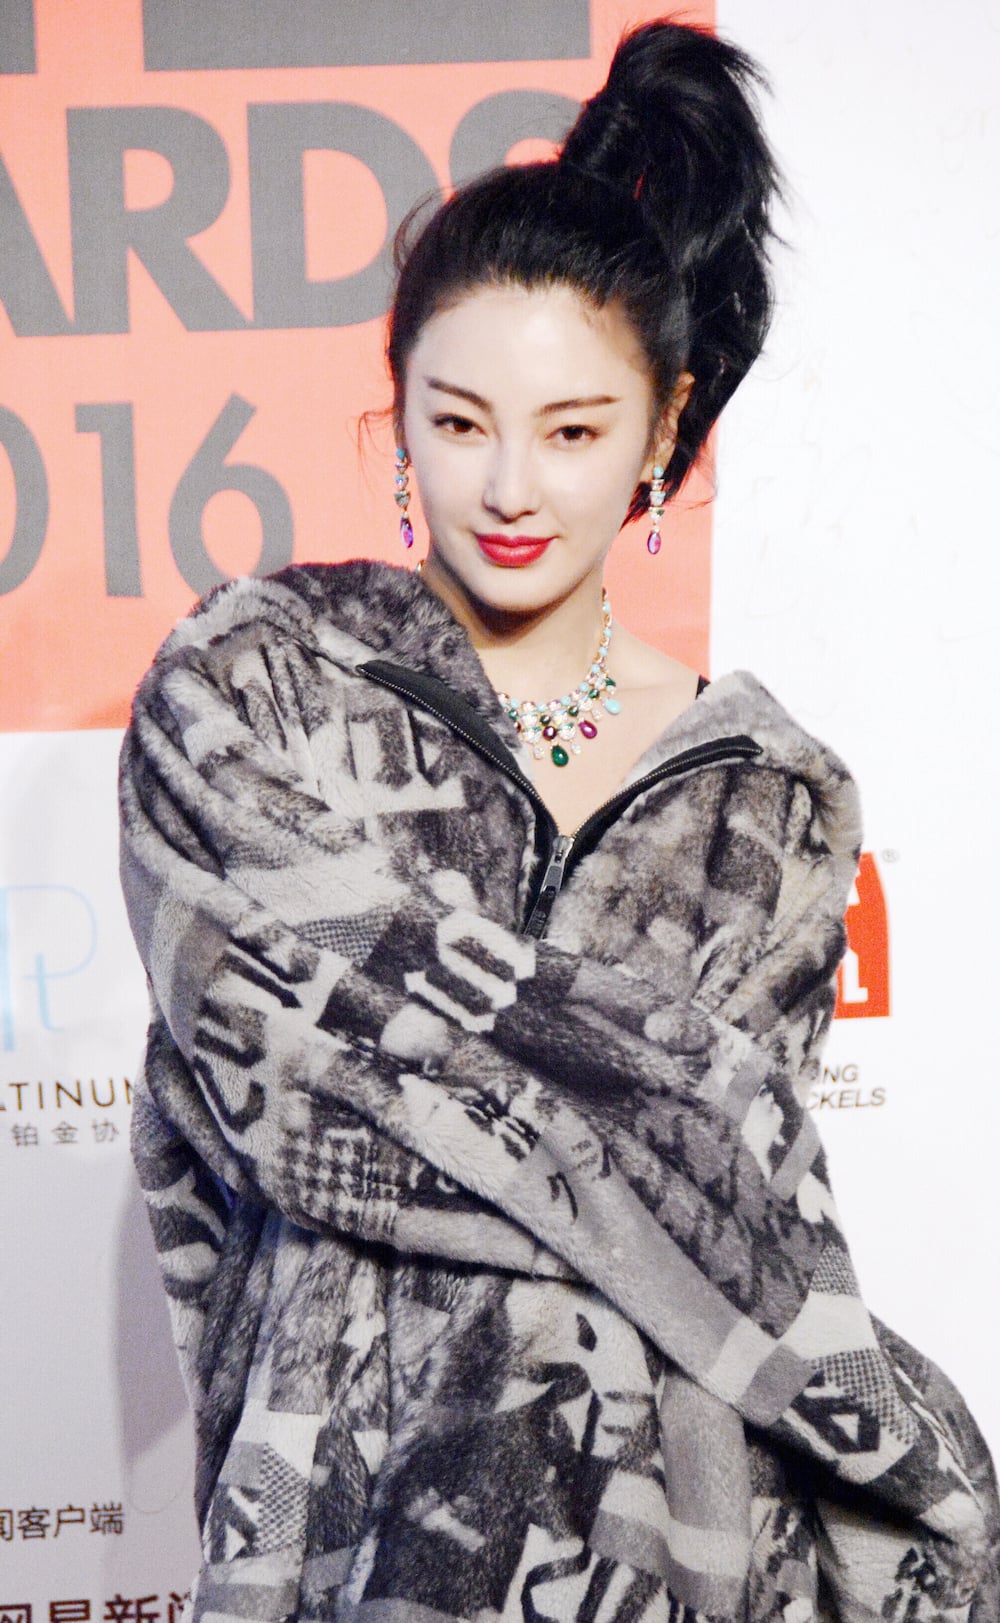 Actress Zhang Yuqi